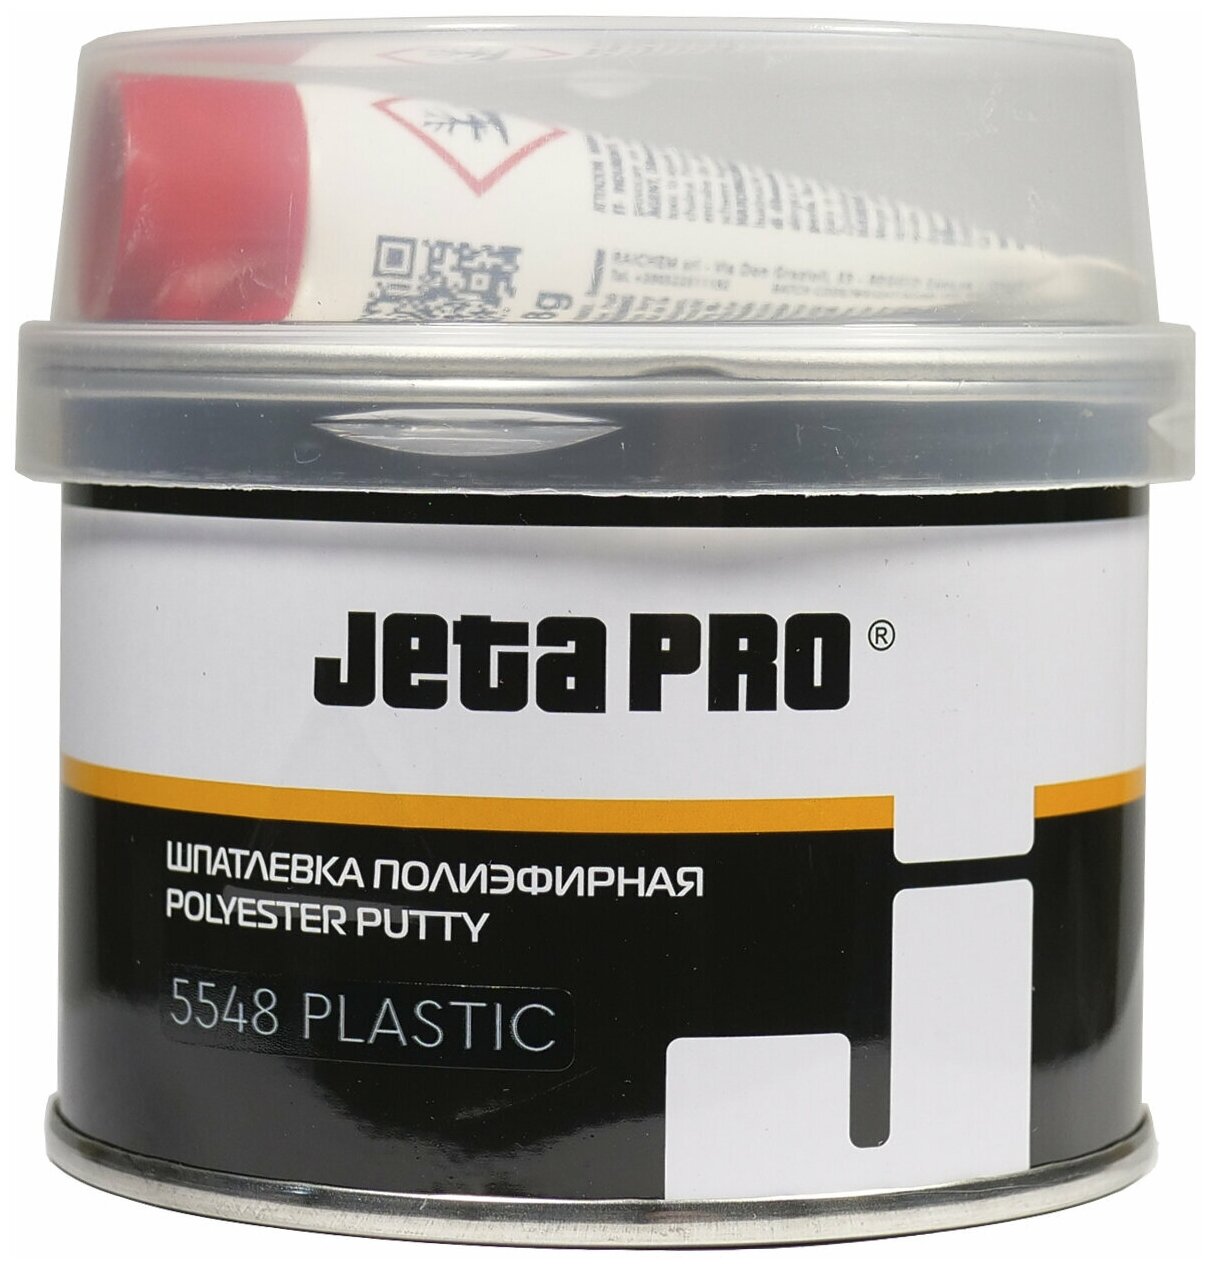 Шпатлевка PLASTIC Jeta Pro 5548 025 кг